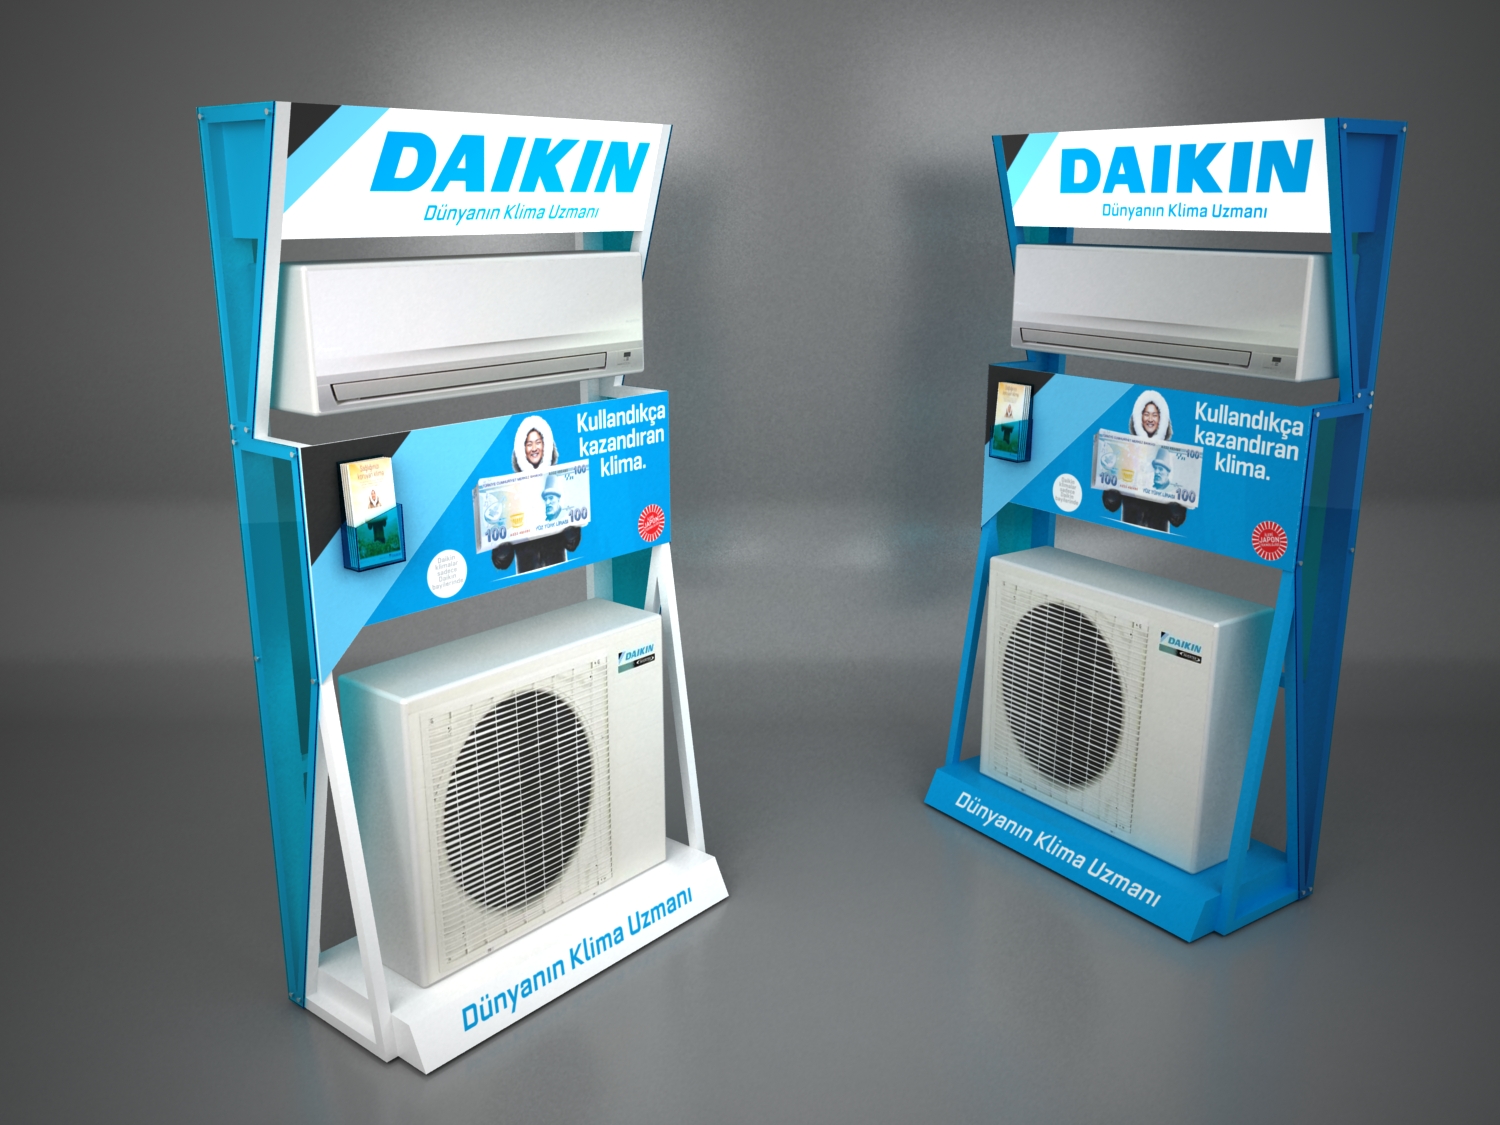 Daikin In-Store Application